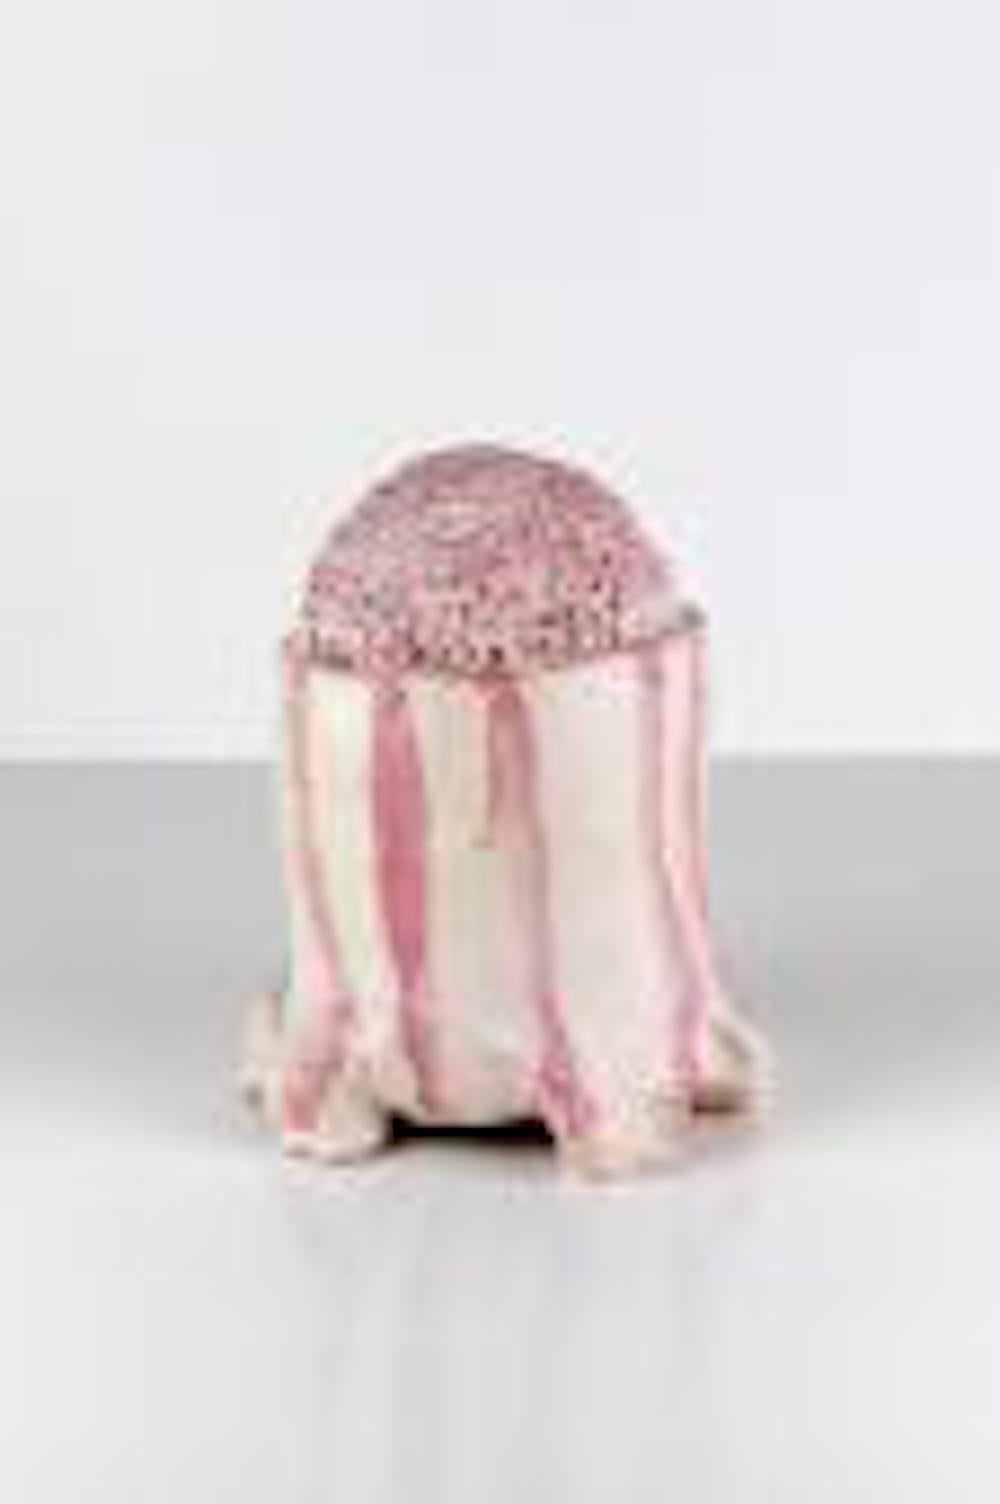 Candy Striper - Sculpture by Susan Lisbin